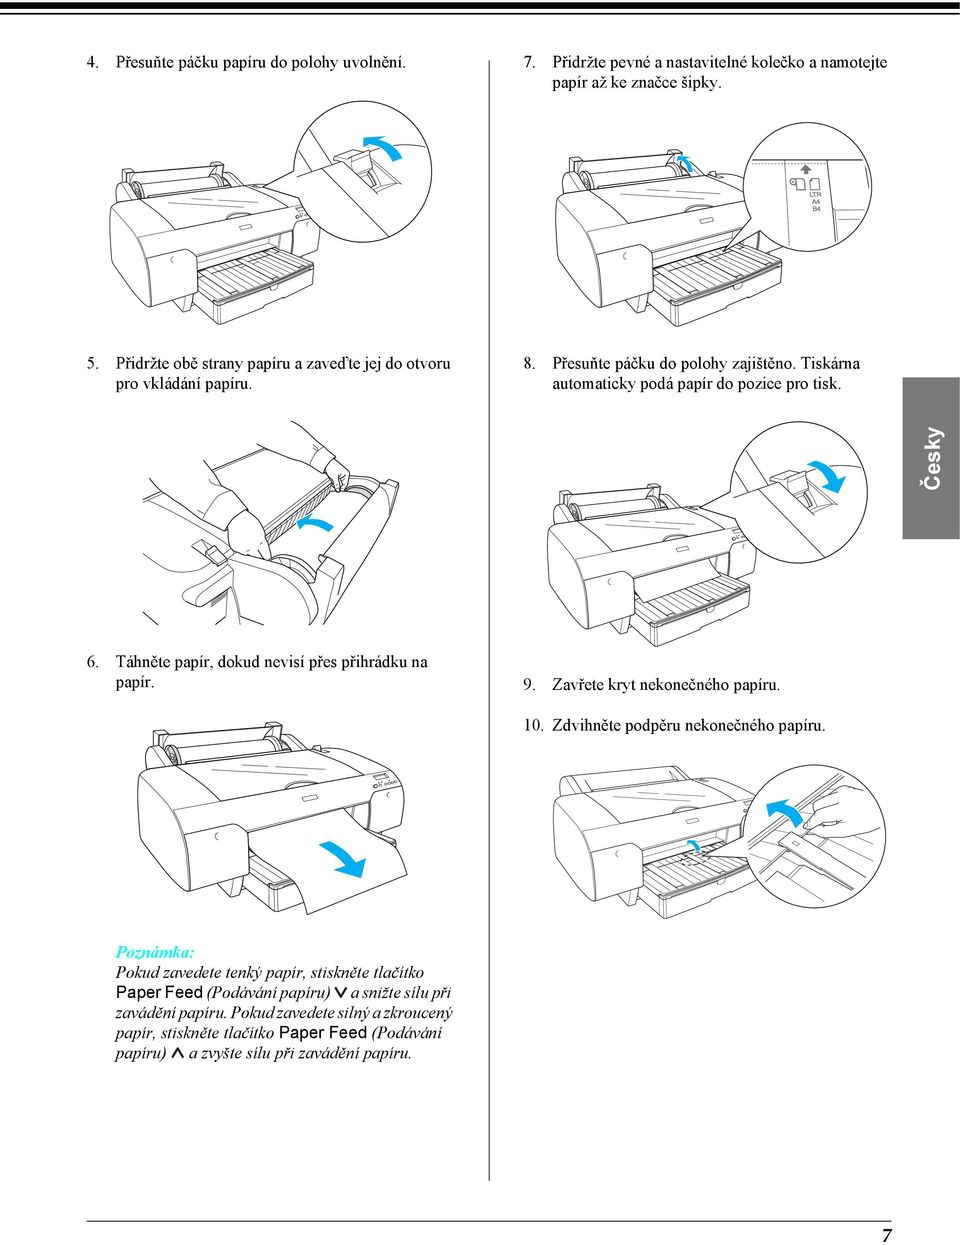 Táhněte papír, dokud nevisí přes přihrádku na papír. 9. Zavřete kryt nekonečného papíru. 10. Zdvihněte podpěru nekonečného papíru.